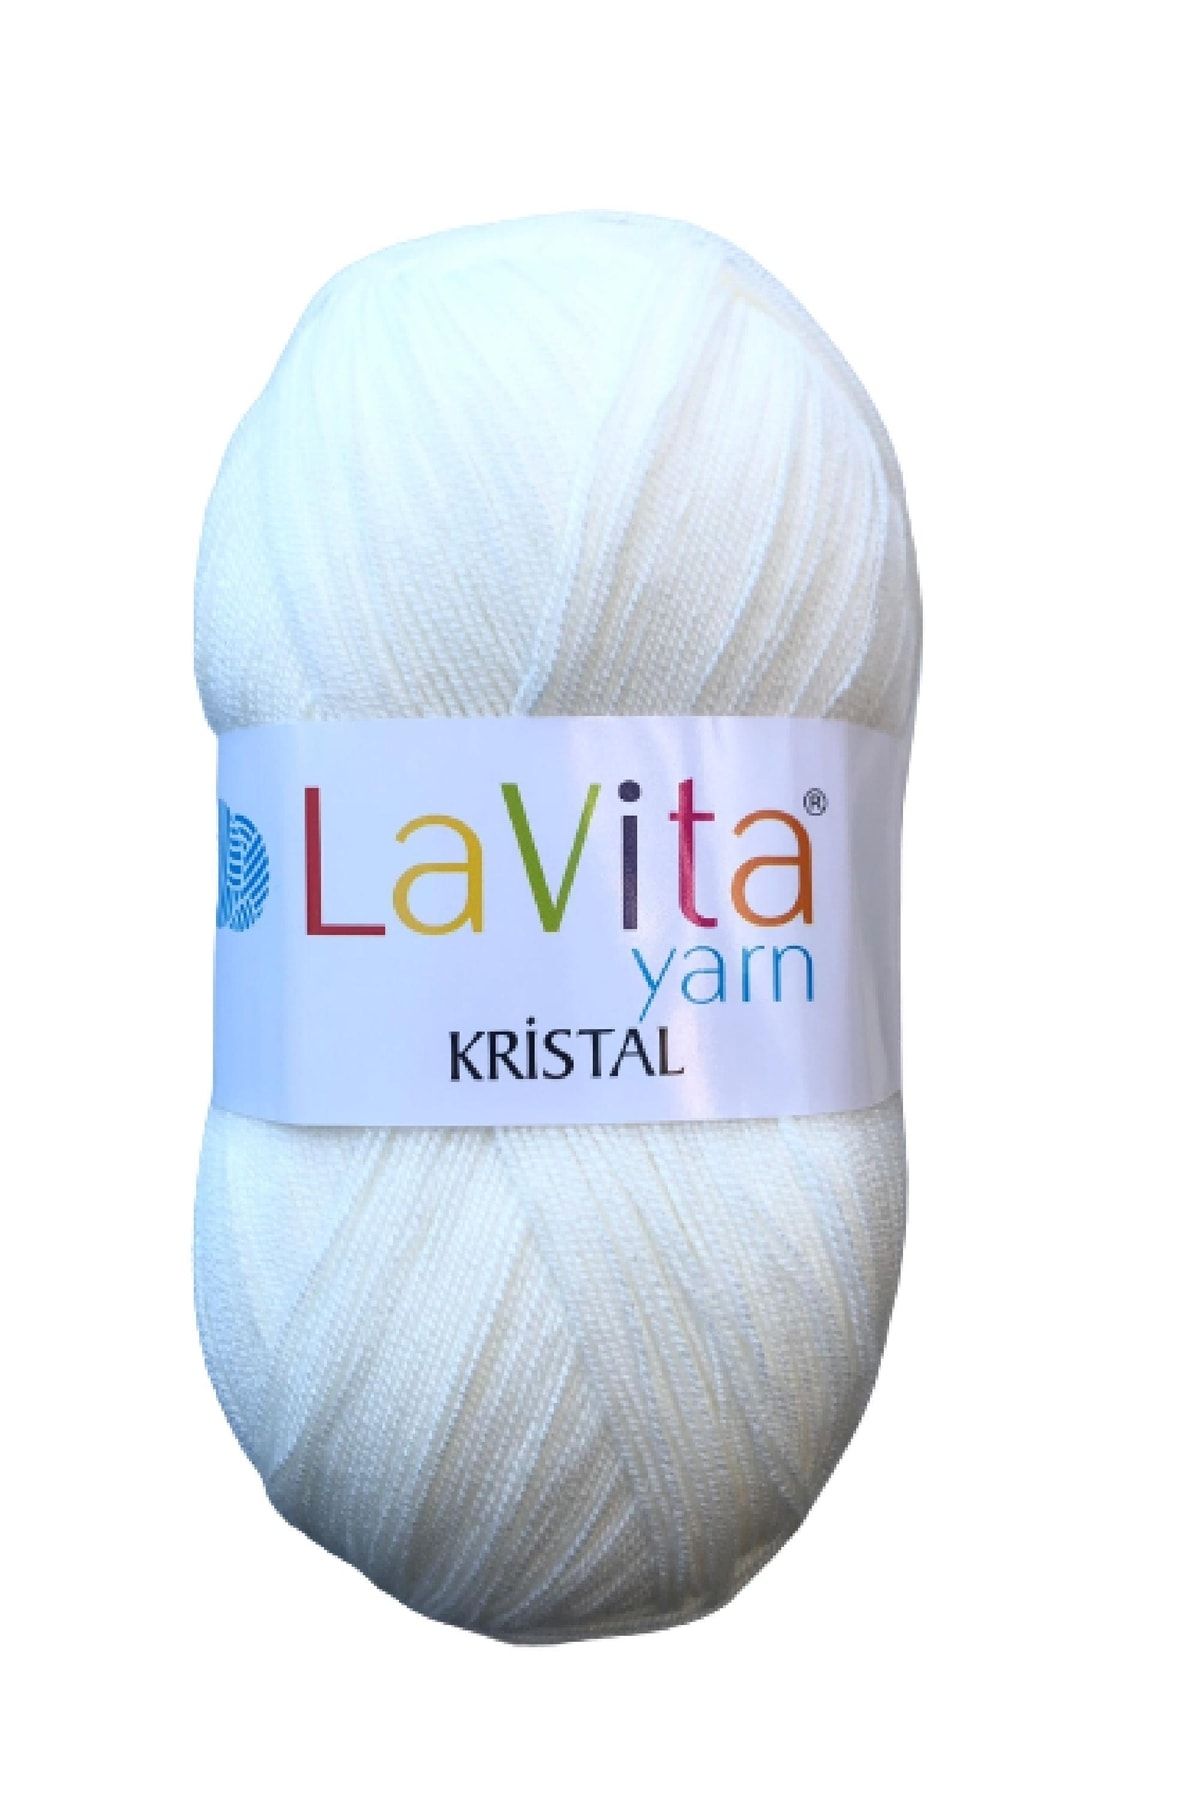 LaVita Yarn Kristal 9502 Lif Ipi / Örgü Iplik